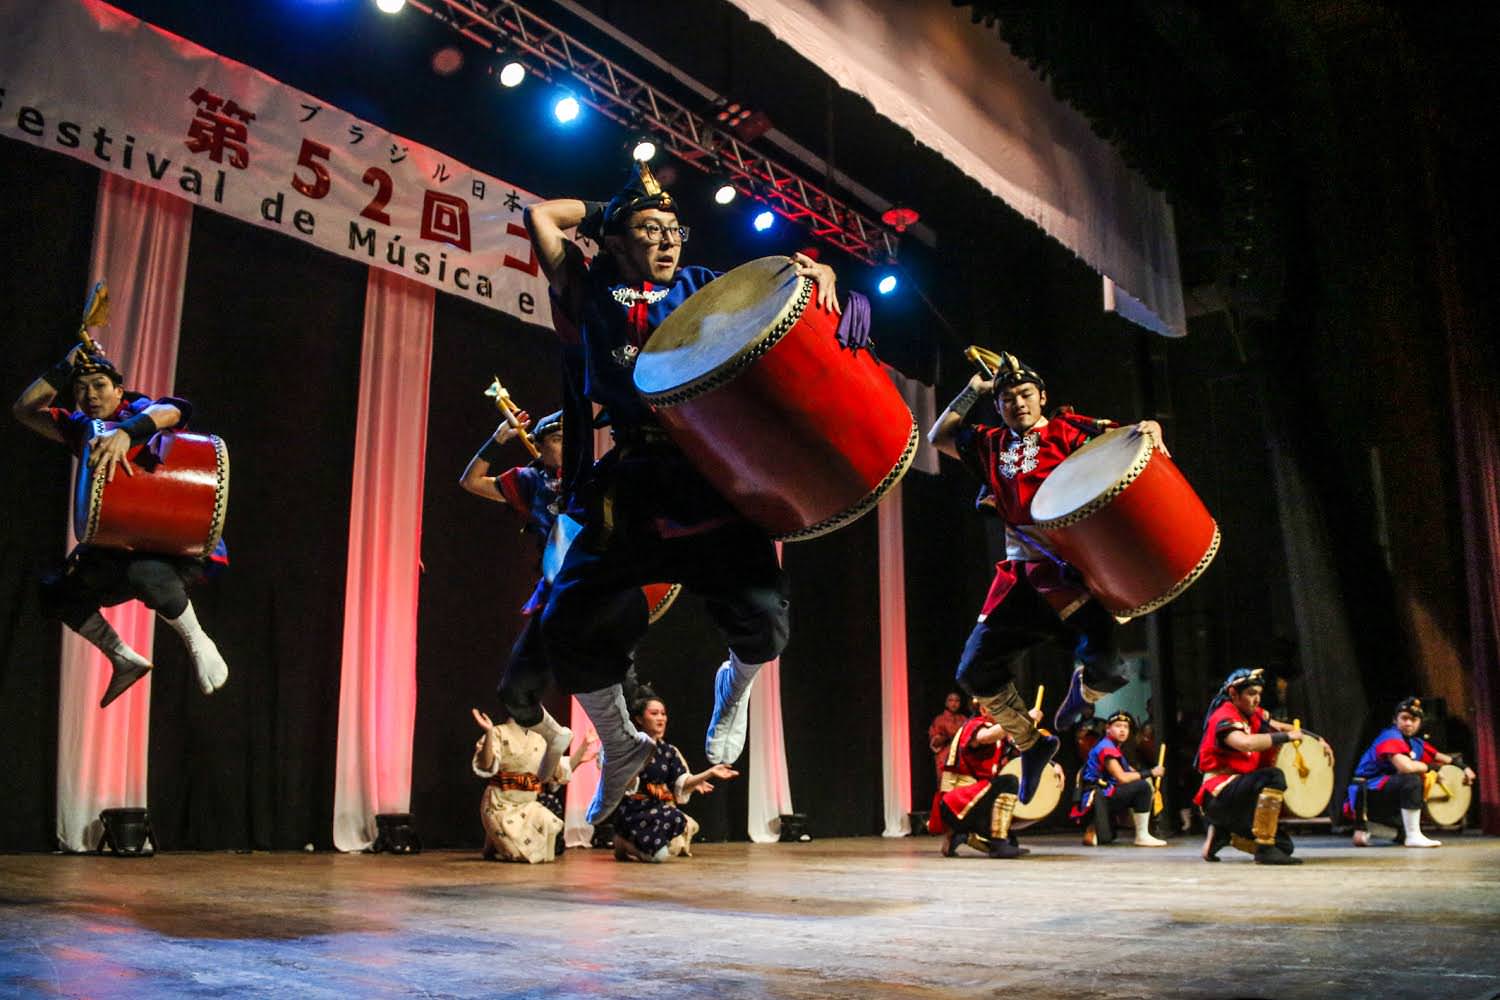 Espetáculo de artes de Okinawa comemorando os 110 anos de Imigração Japonesa no Brasil” em 2018. Foto: Divulgação.